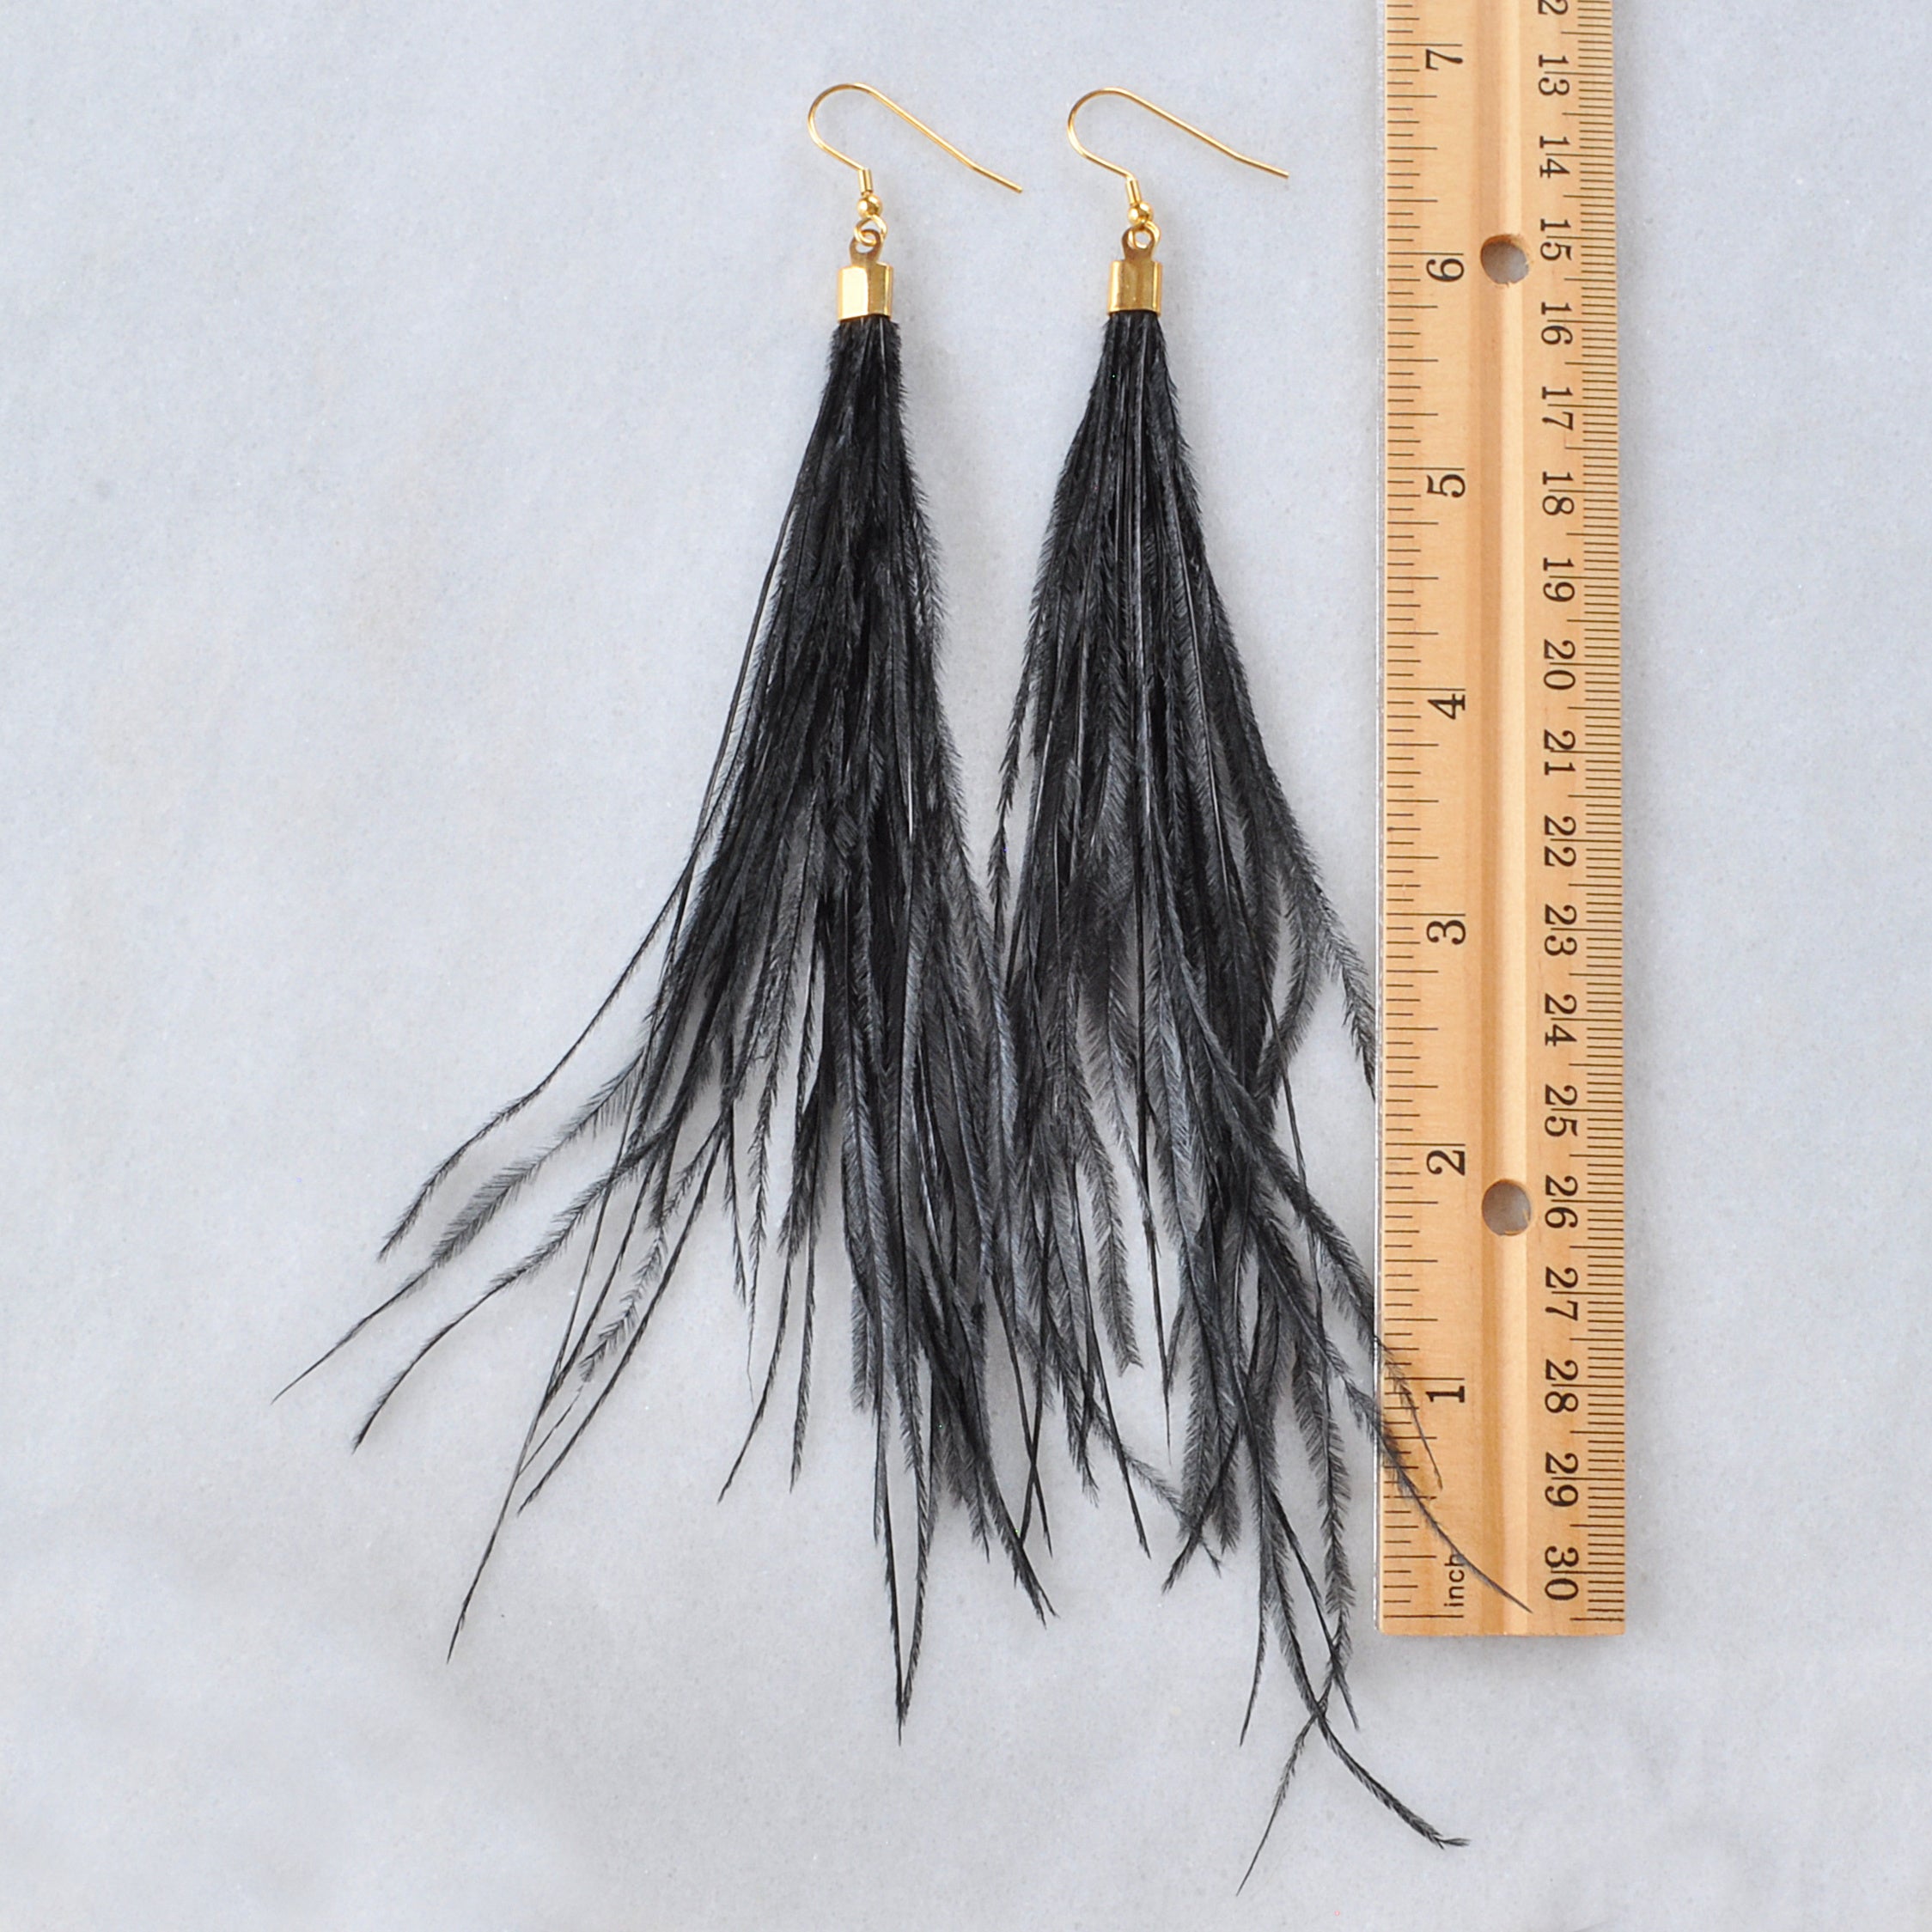 Black Feather earrings